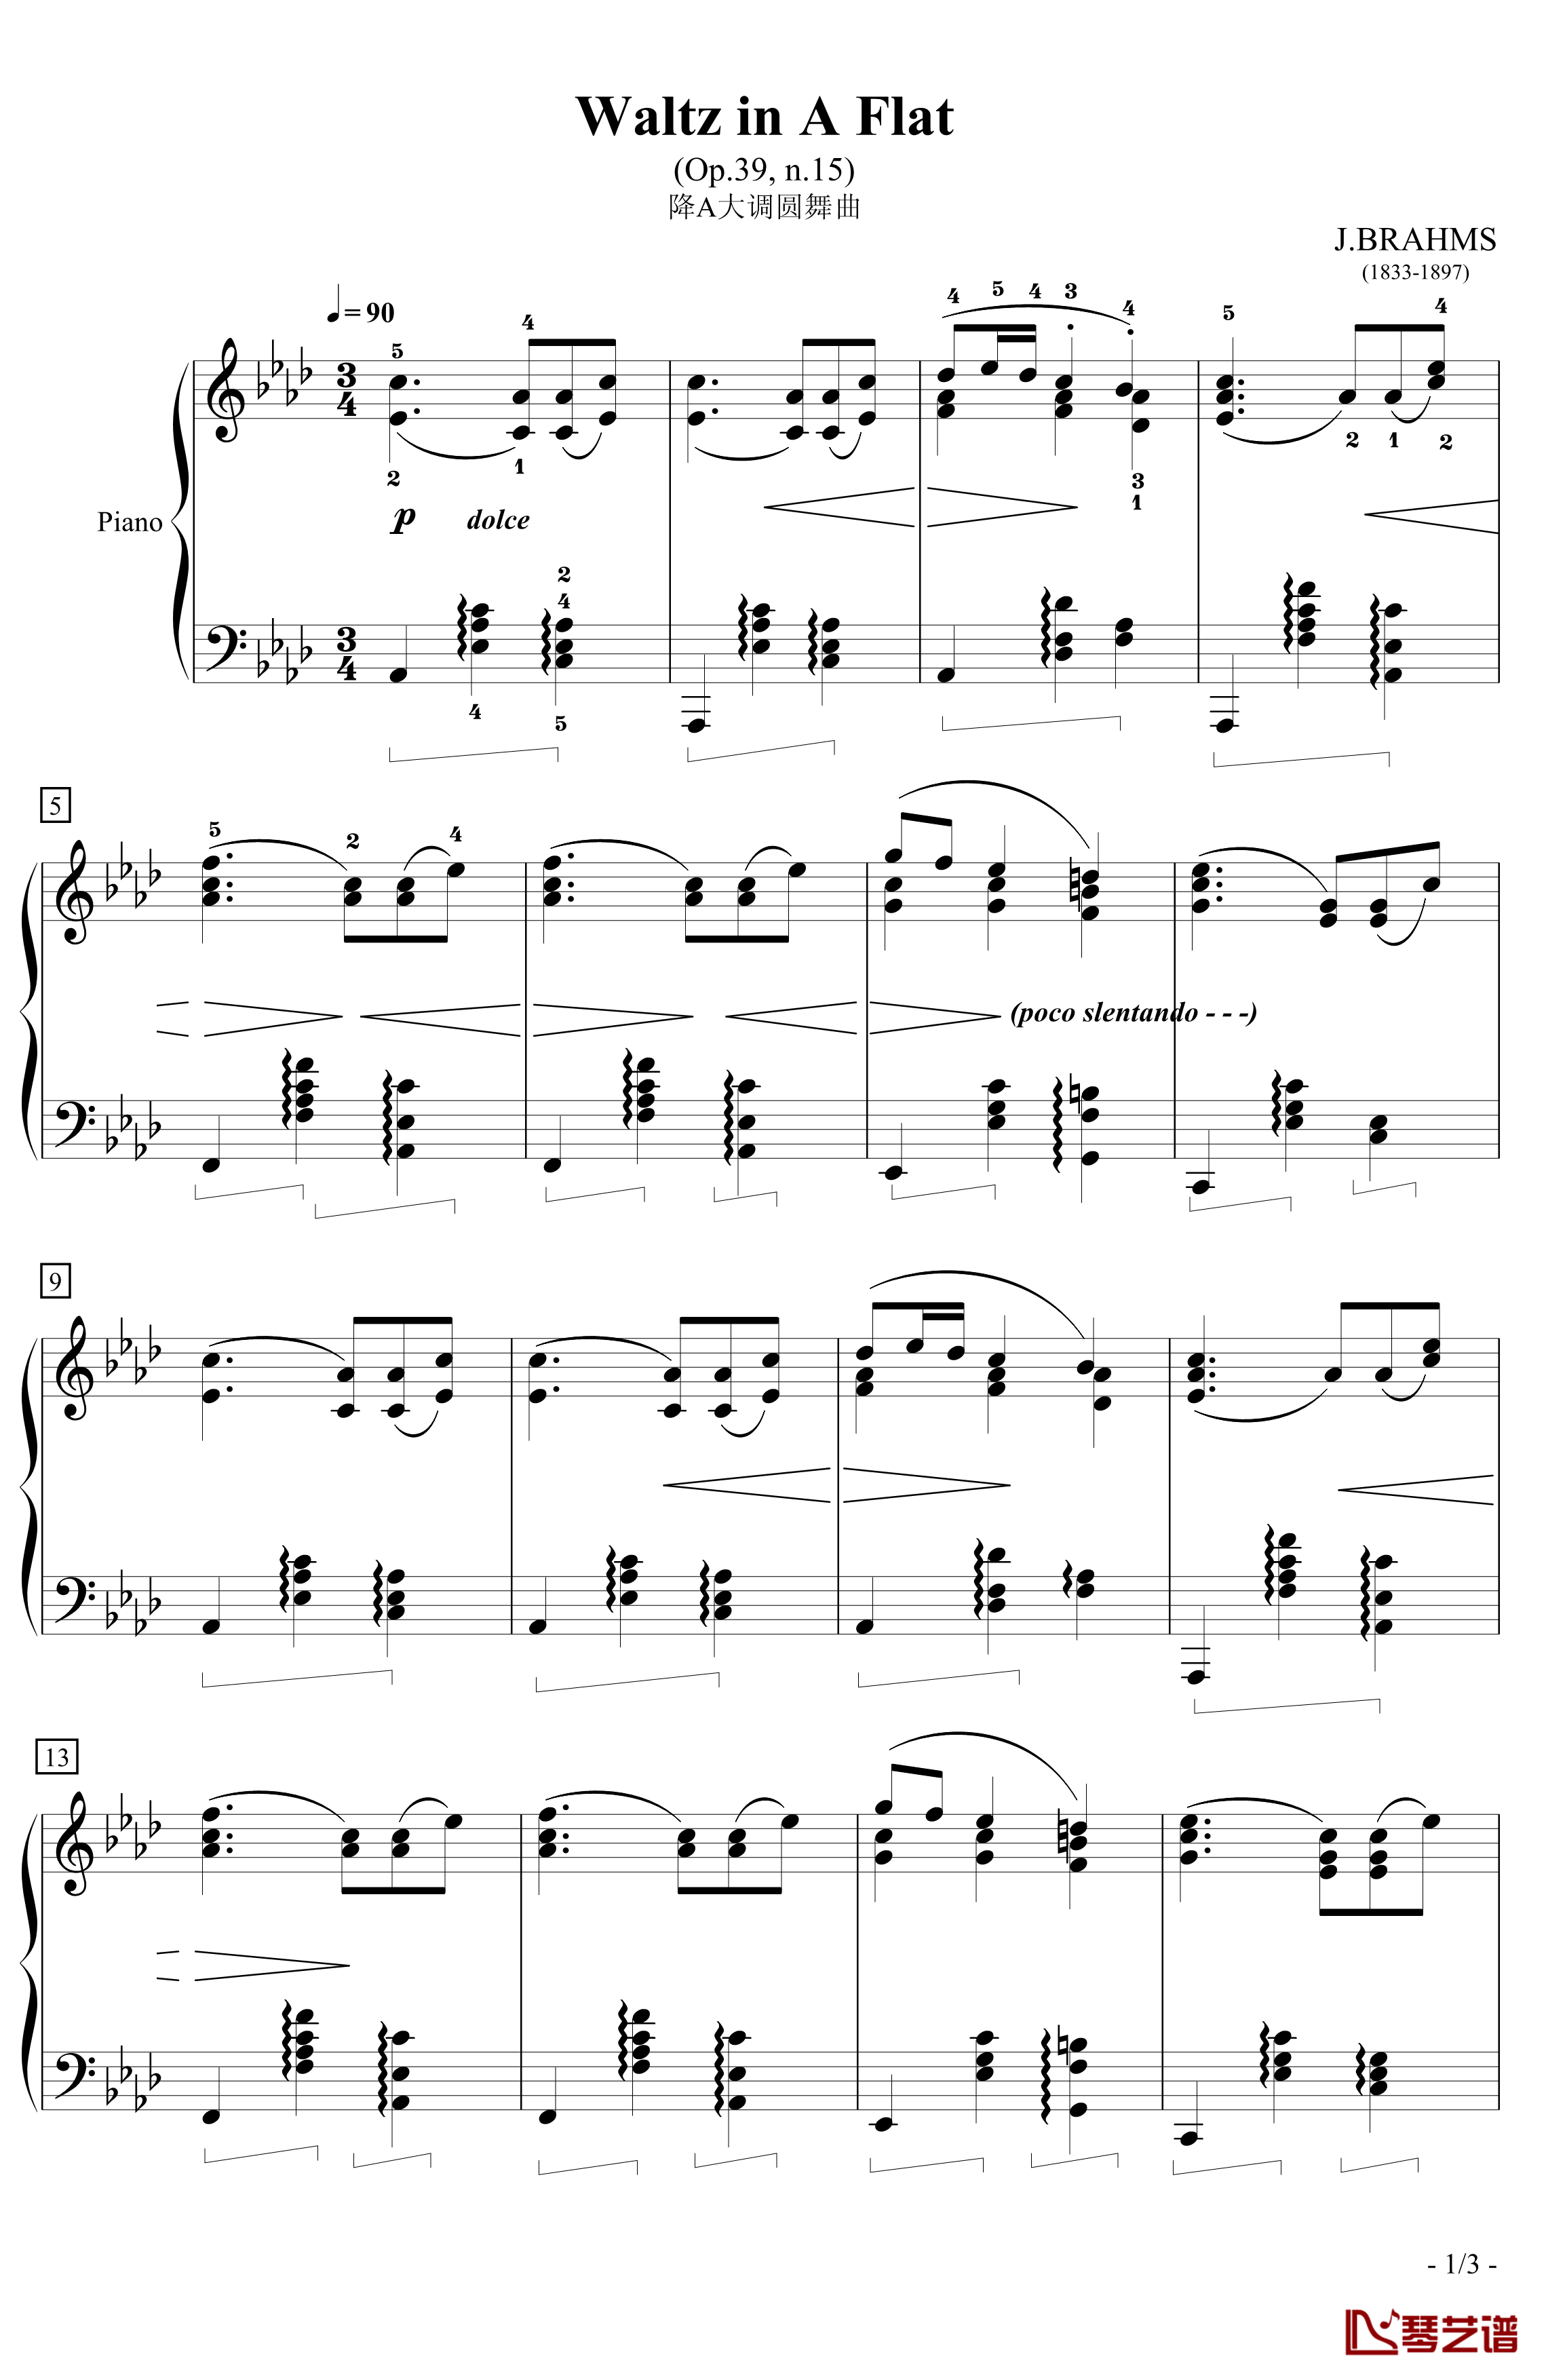 Waltz in A Flat 钢琴谱-降A大调圆舞曲-勃拉姆斯-Brahms1